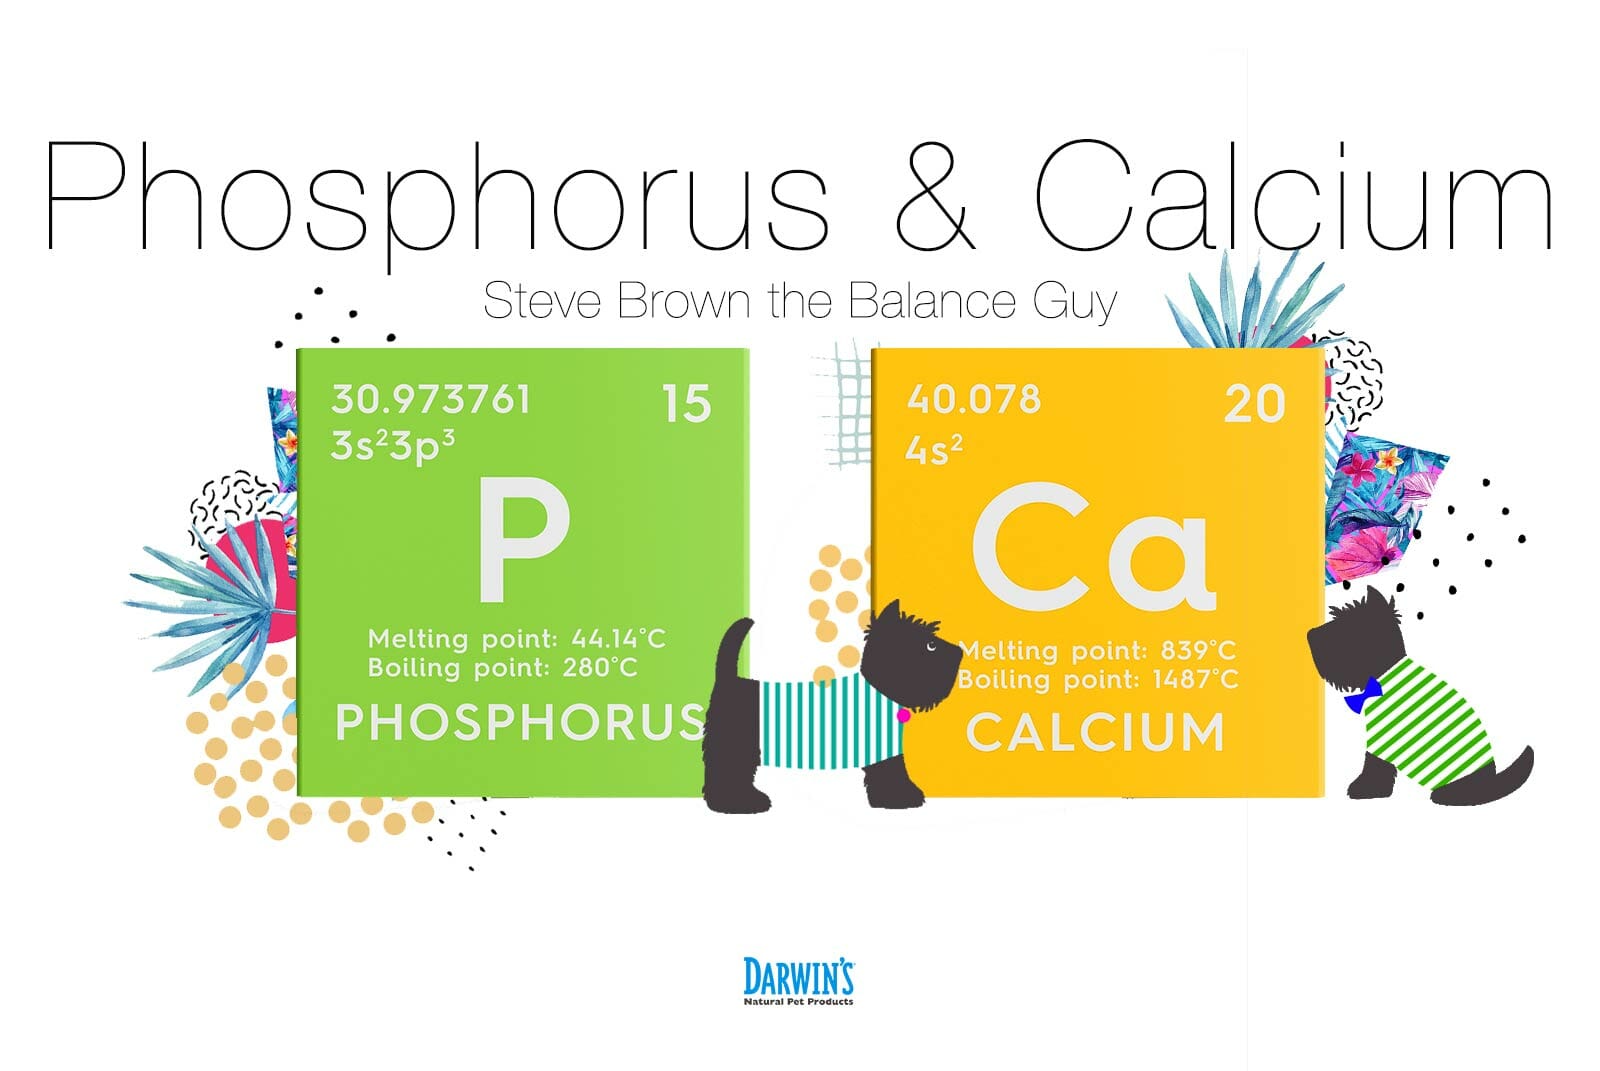 Focus on Nutrients: 2 Calcium and Phosphorus